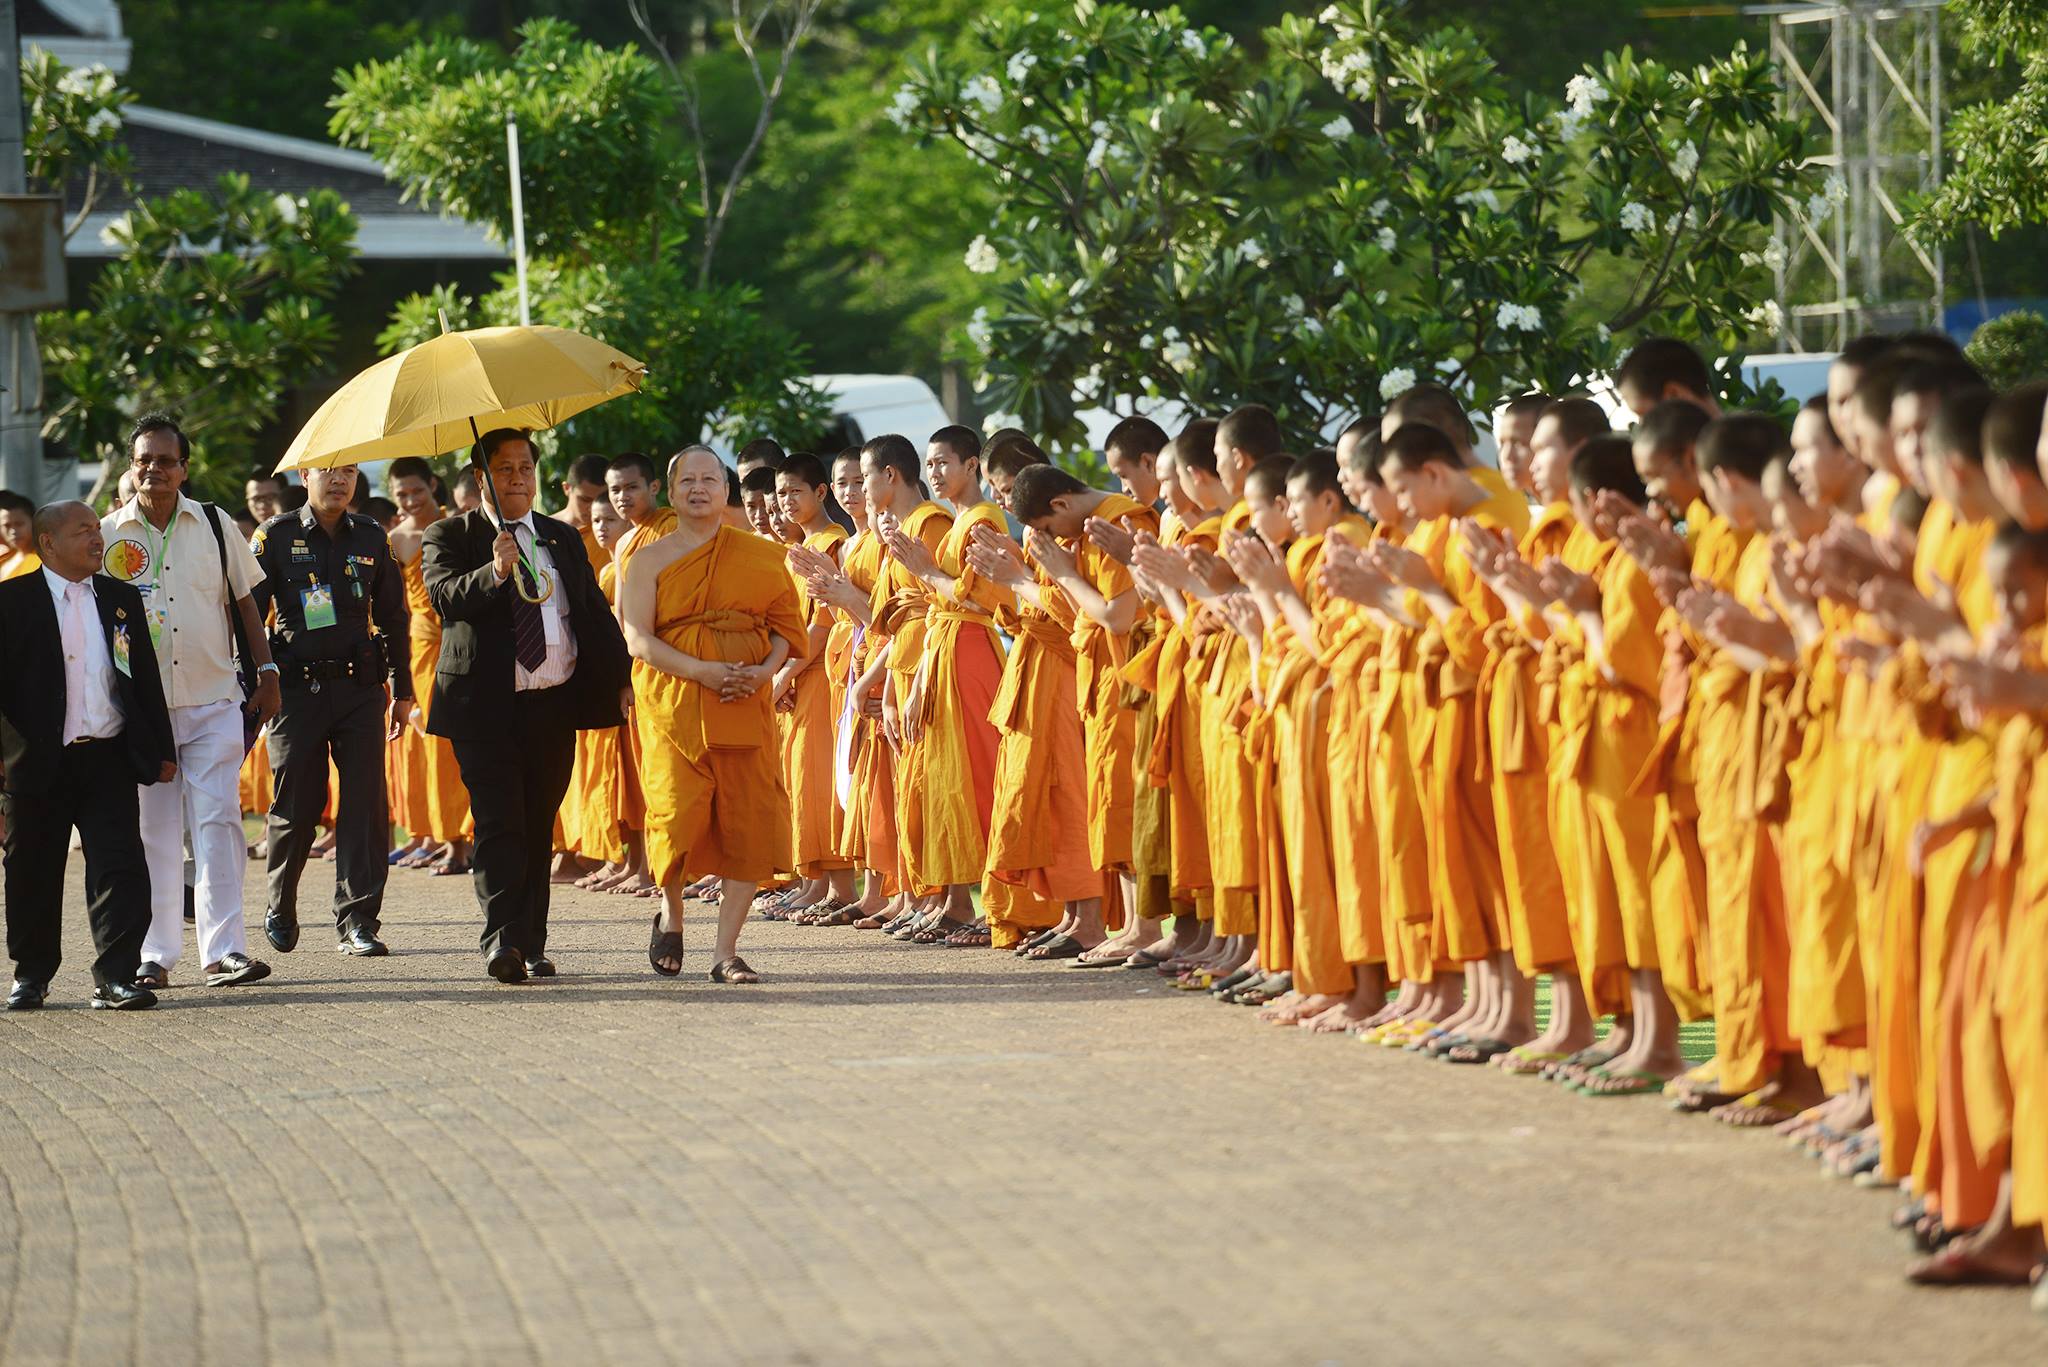 A harmadik napon az ENSZ bangkoki épületében folytatódott az ünnepség, ahol az elmúlt napok összegzéseként kiadták a bangkoki deklarációt, lásd: <a href="http://bit.ly/1D8E5Ip">http://bit.ly/1D8E5Ip</a>  Majd végül a Buddhamonthon parkban gyújtottak a résztvevők gyertyát Maha Chakri Sirindhorn thai hercegnő 60. születésnapjának tiszteletéreCandle-lit Procession in Srisakyadasapalanyana Buddha Statute’s compound, Buddhamonthon, Nakhornpathom